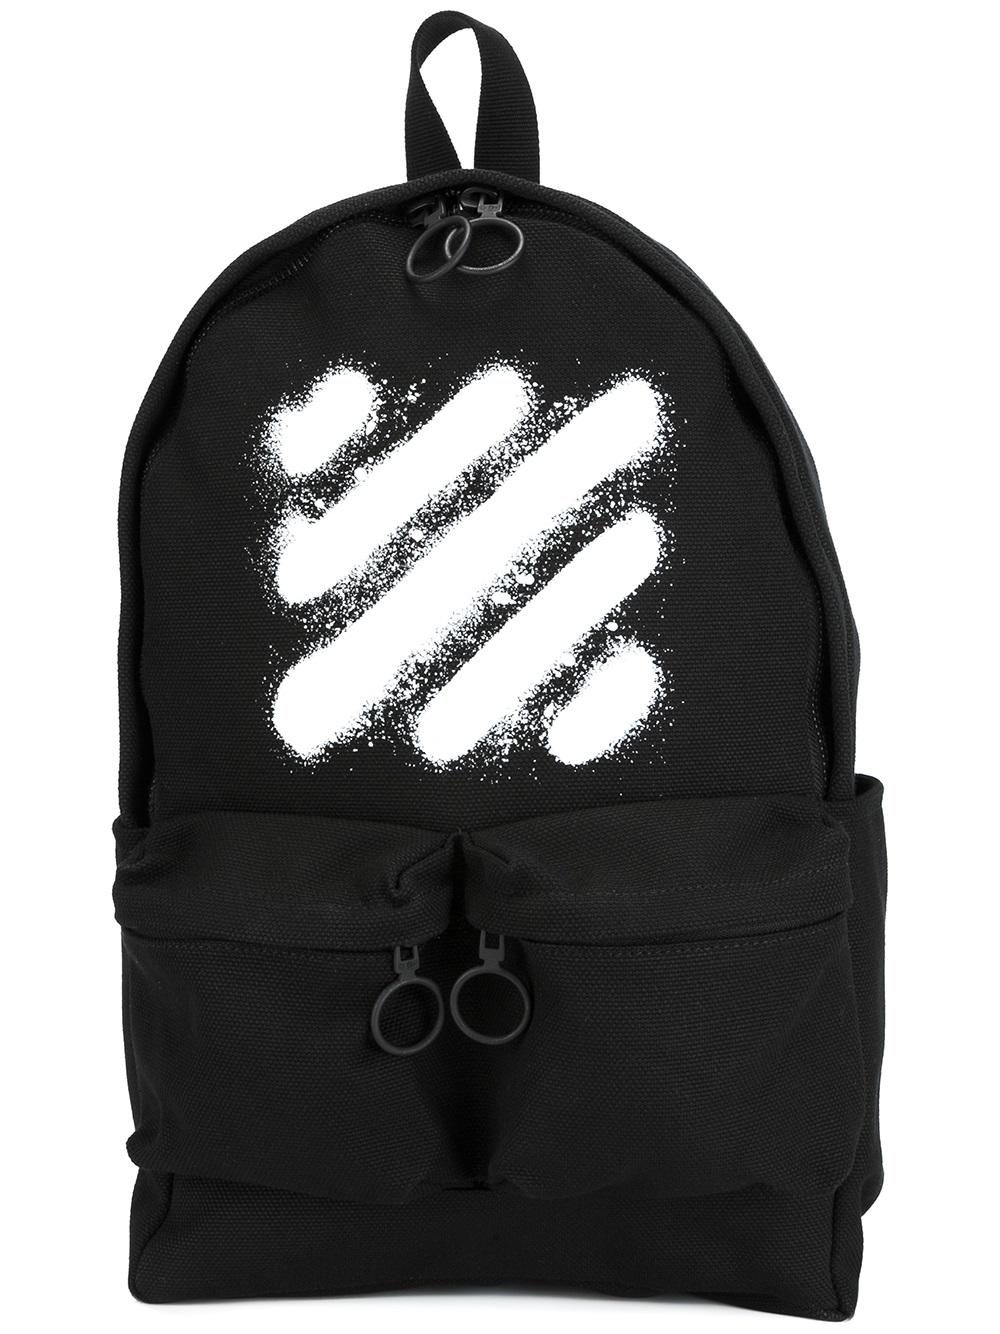 Off-White 'Diag Spray' backpack 1001 BLACK WHITE Men Bags Backpacks